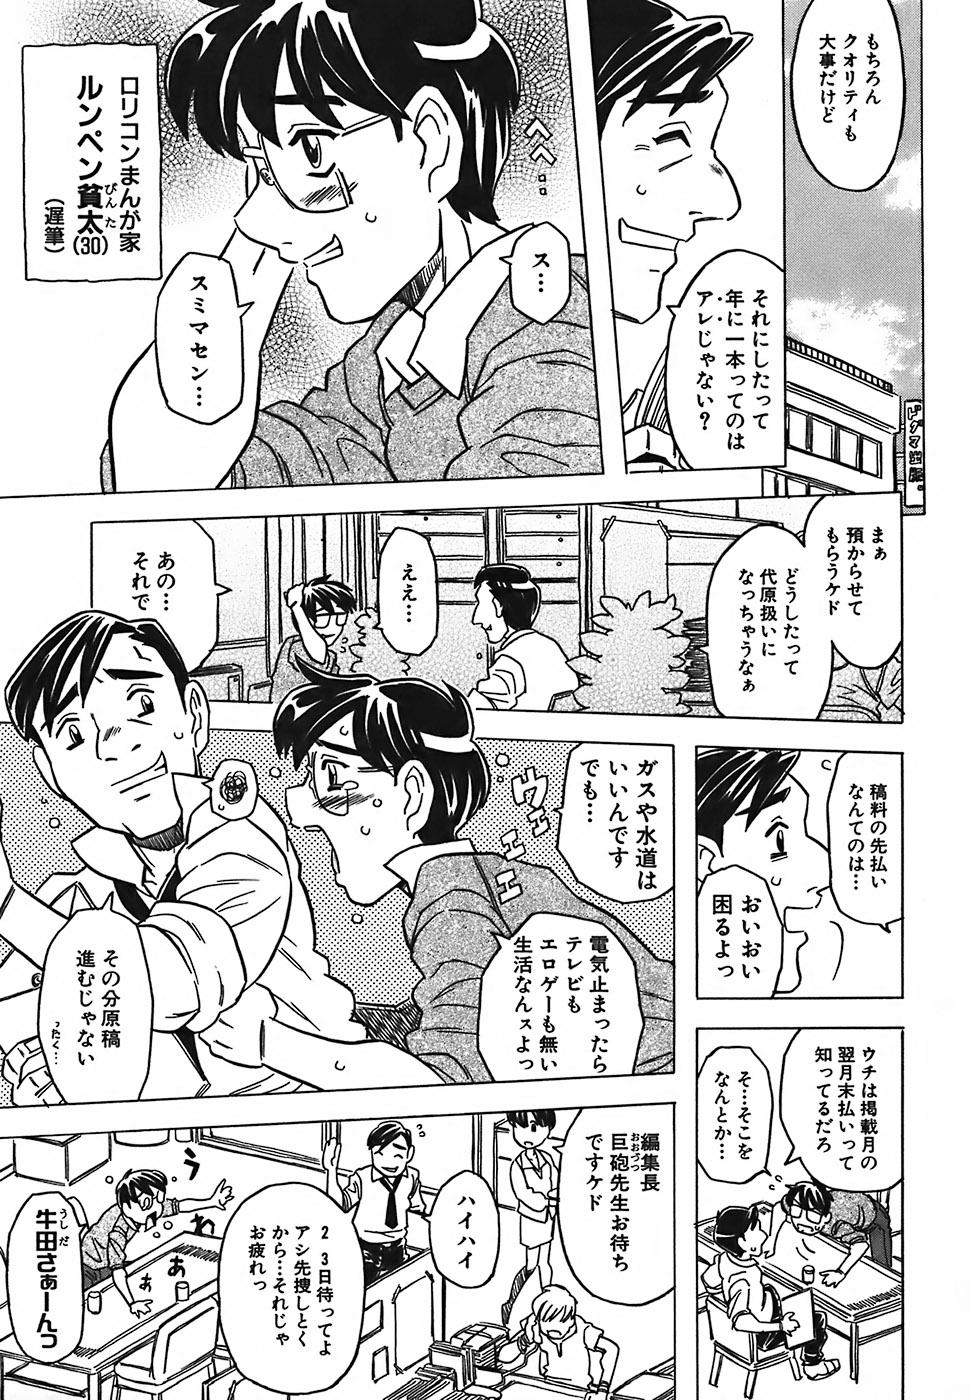 Petera Cannon Sensei Tobashisugi Glory Hole - Page 9